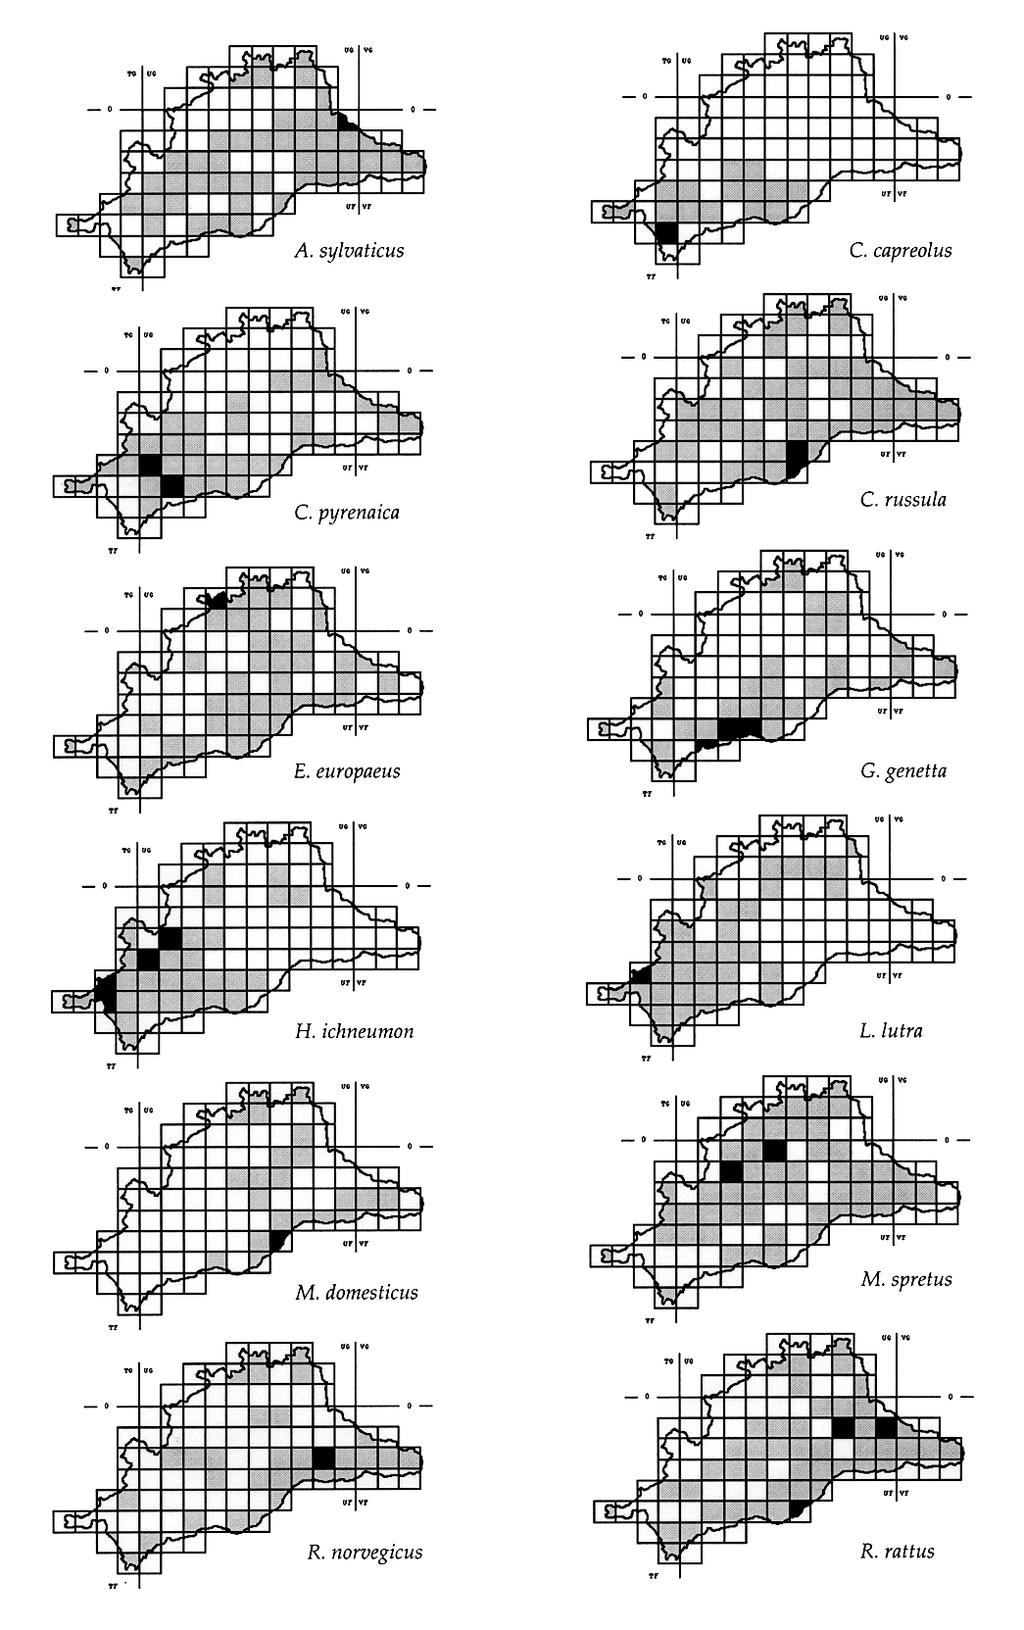 Determinación de áreas probables de distribución Figura 3. Especies con área de distribución probable mayor que el área de distribución registrada.